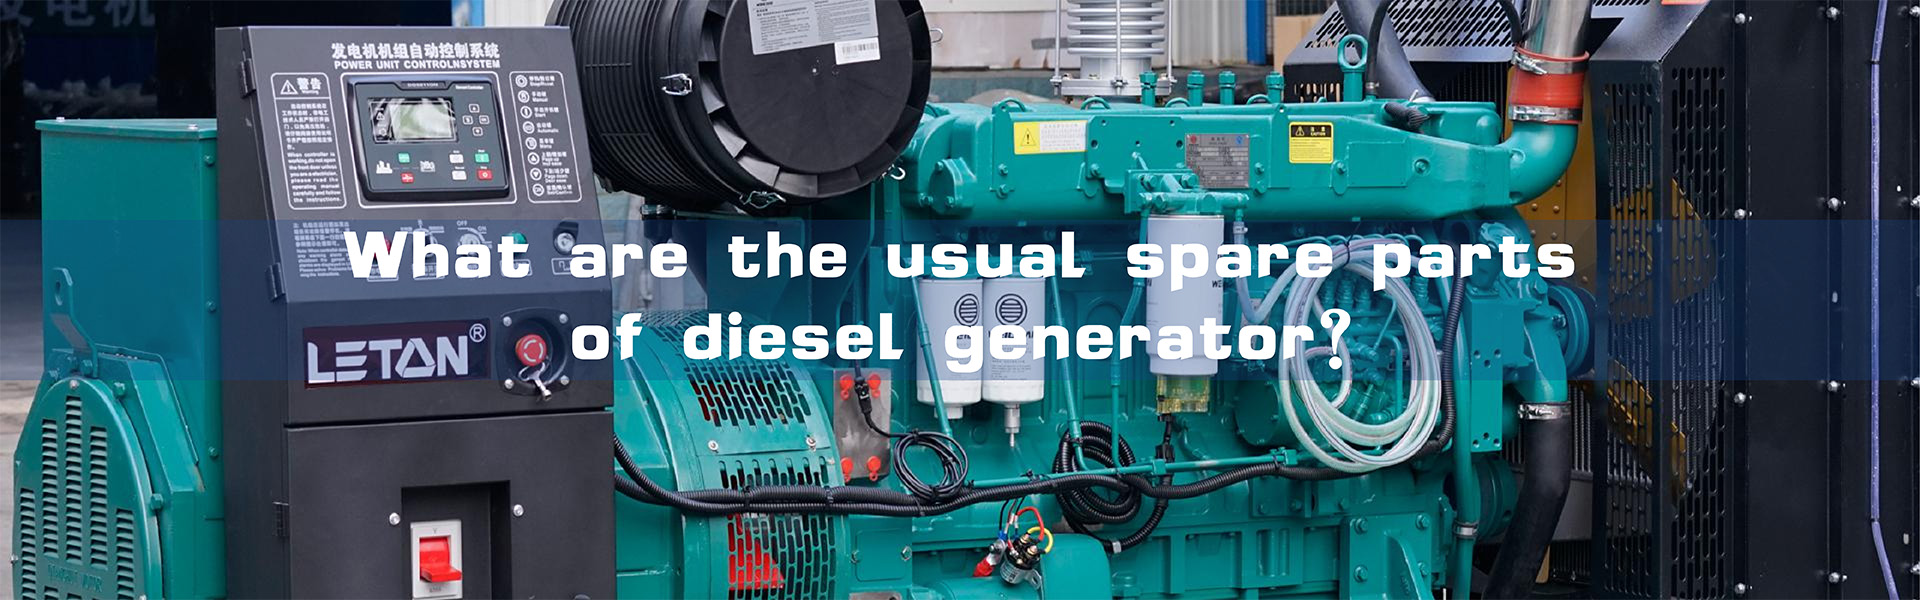 Các phụ tùng thay thế thông thường của máy phát điện diesel là gì?